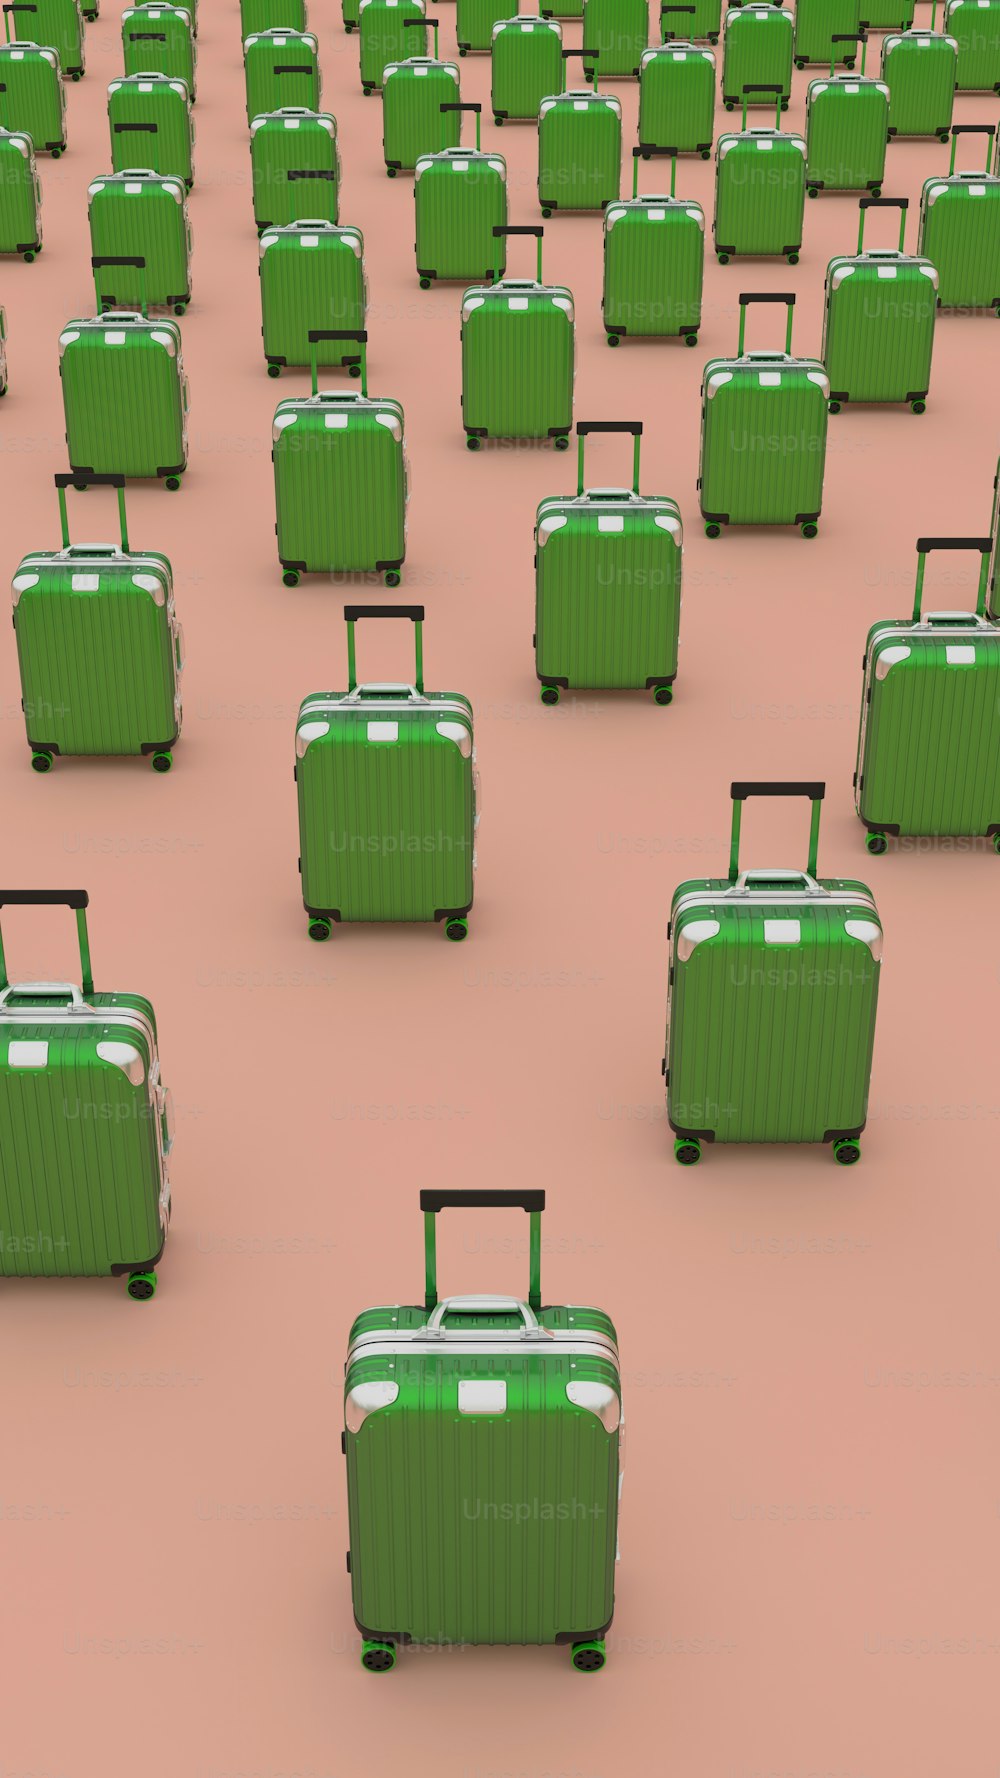 Un groupe de valises vertes assises sur un sol rose